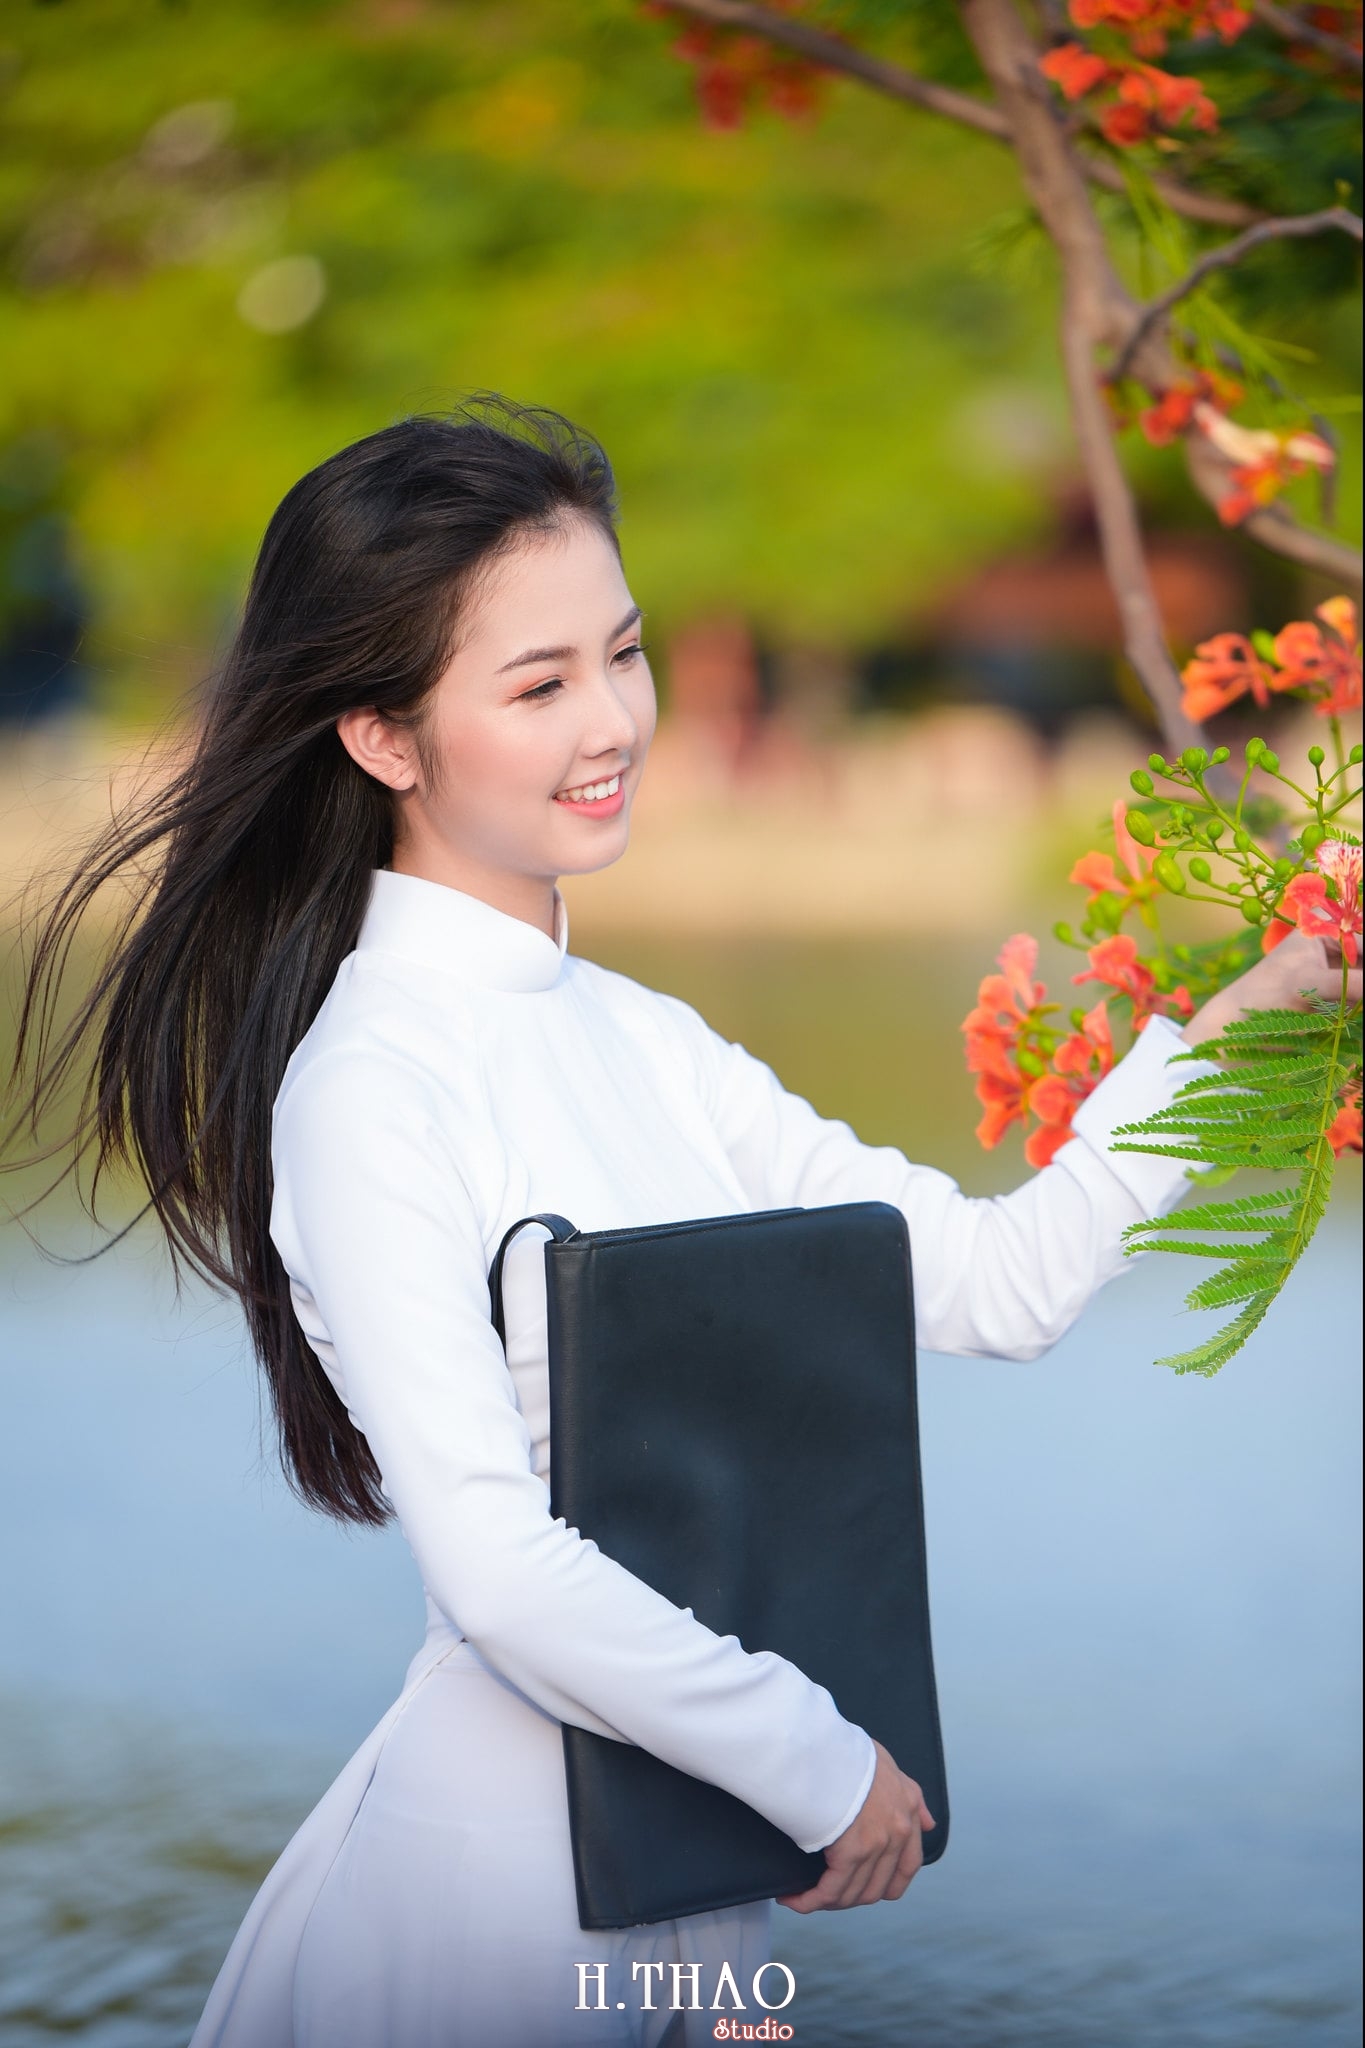 ao dai quan 2 5 - Bộ hình nữ sinh chụp với hoa phượng ở Sài Gòn tuyệt đẹp – HThao Studio